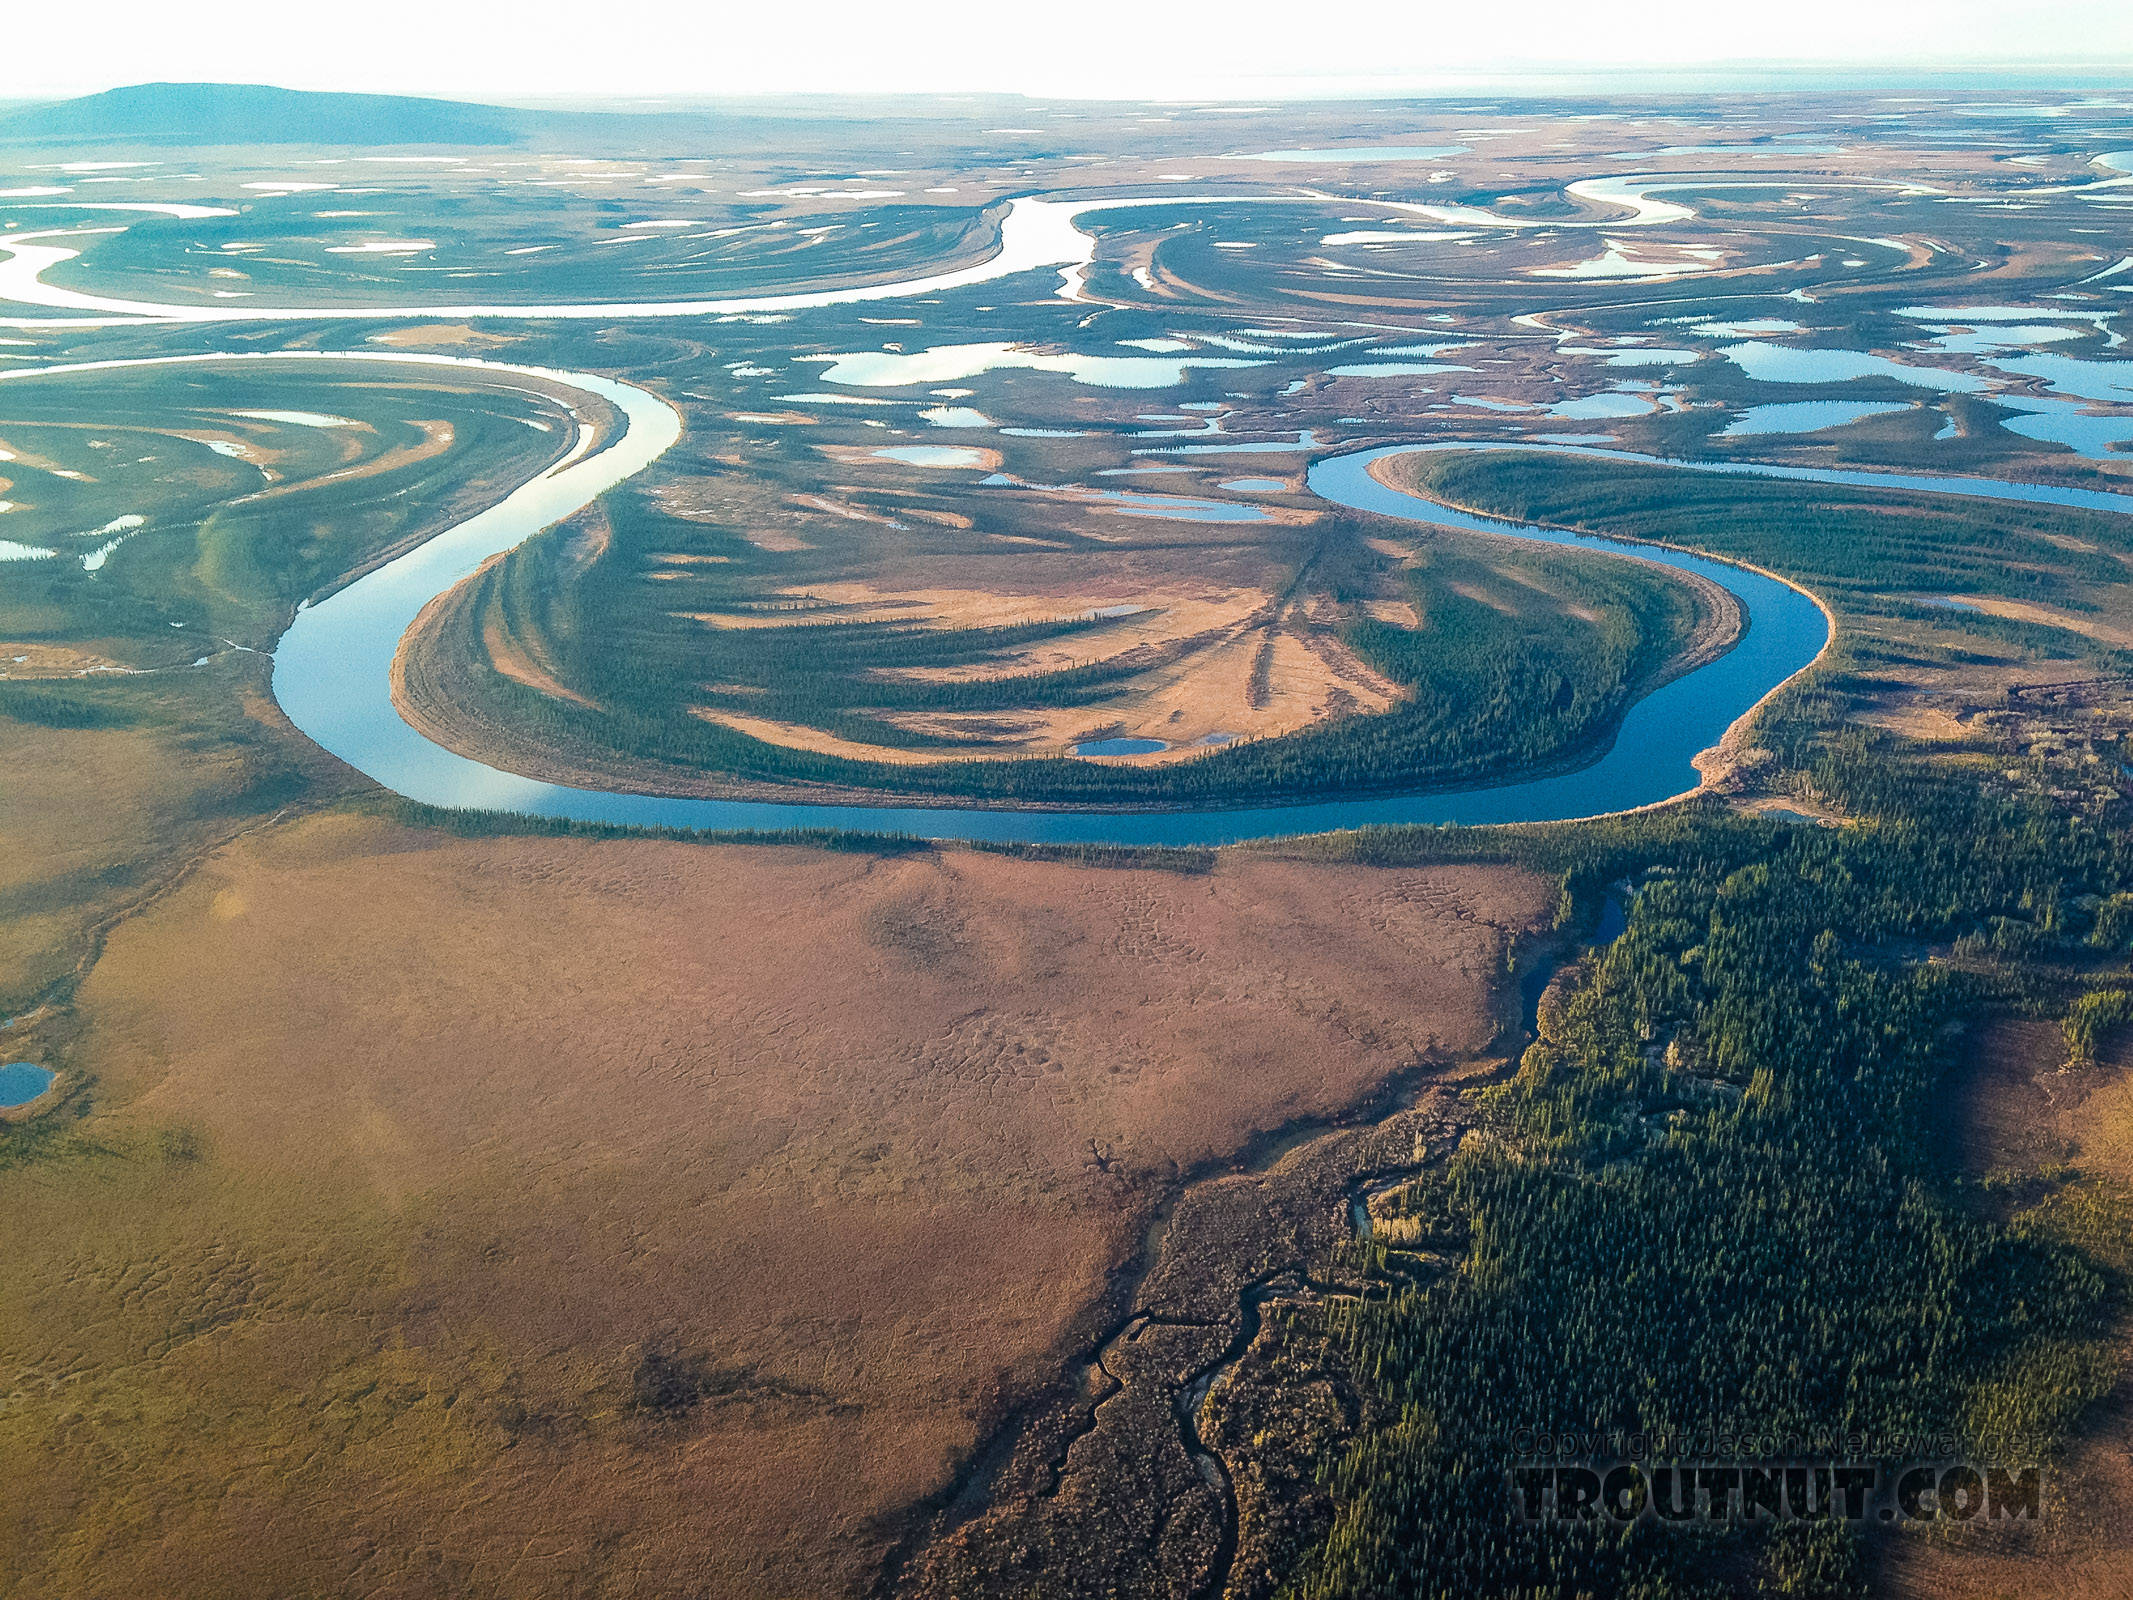 Braids in the Kobuk River delta From the Kobuk River in Alaska.